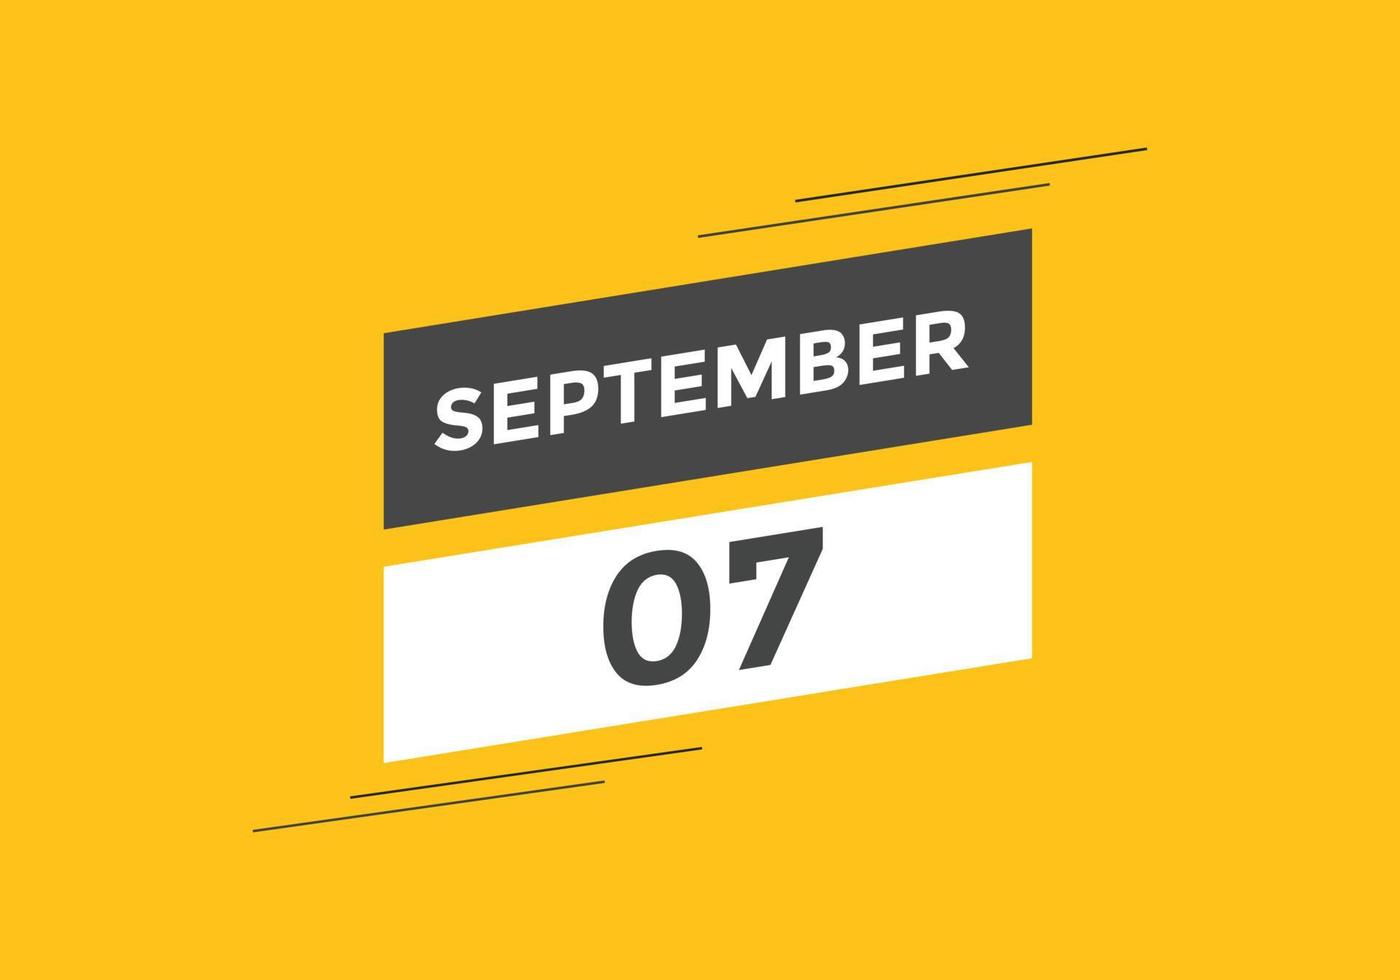 7. september kalendererinnerung. 7. september tägliche kalendersymbolvorlage. Kalender 7. September Icon-Design-Vorlage. Vektor-Illustration vektor